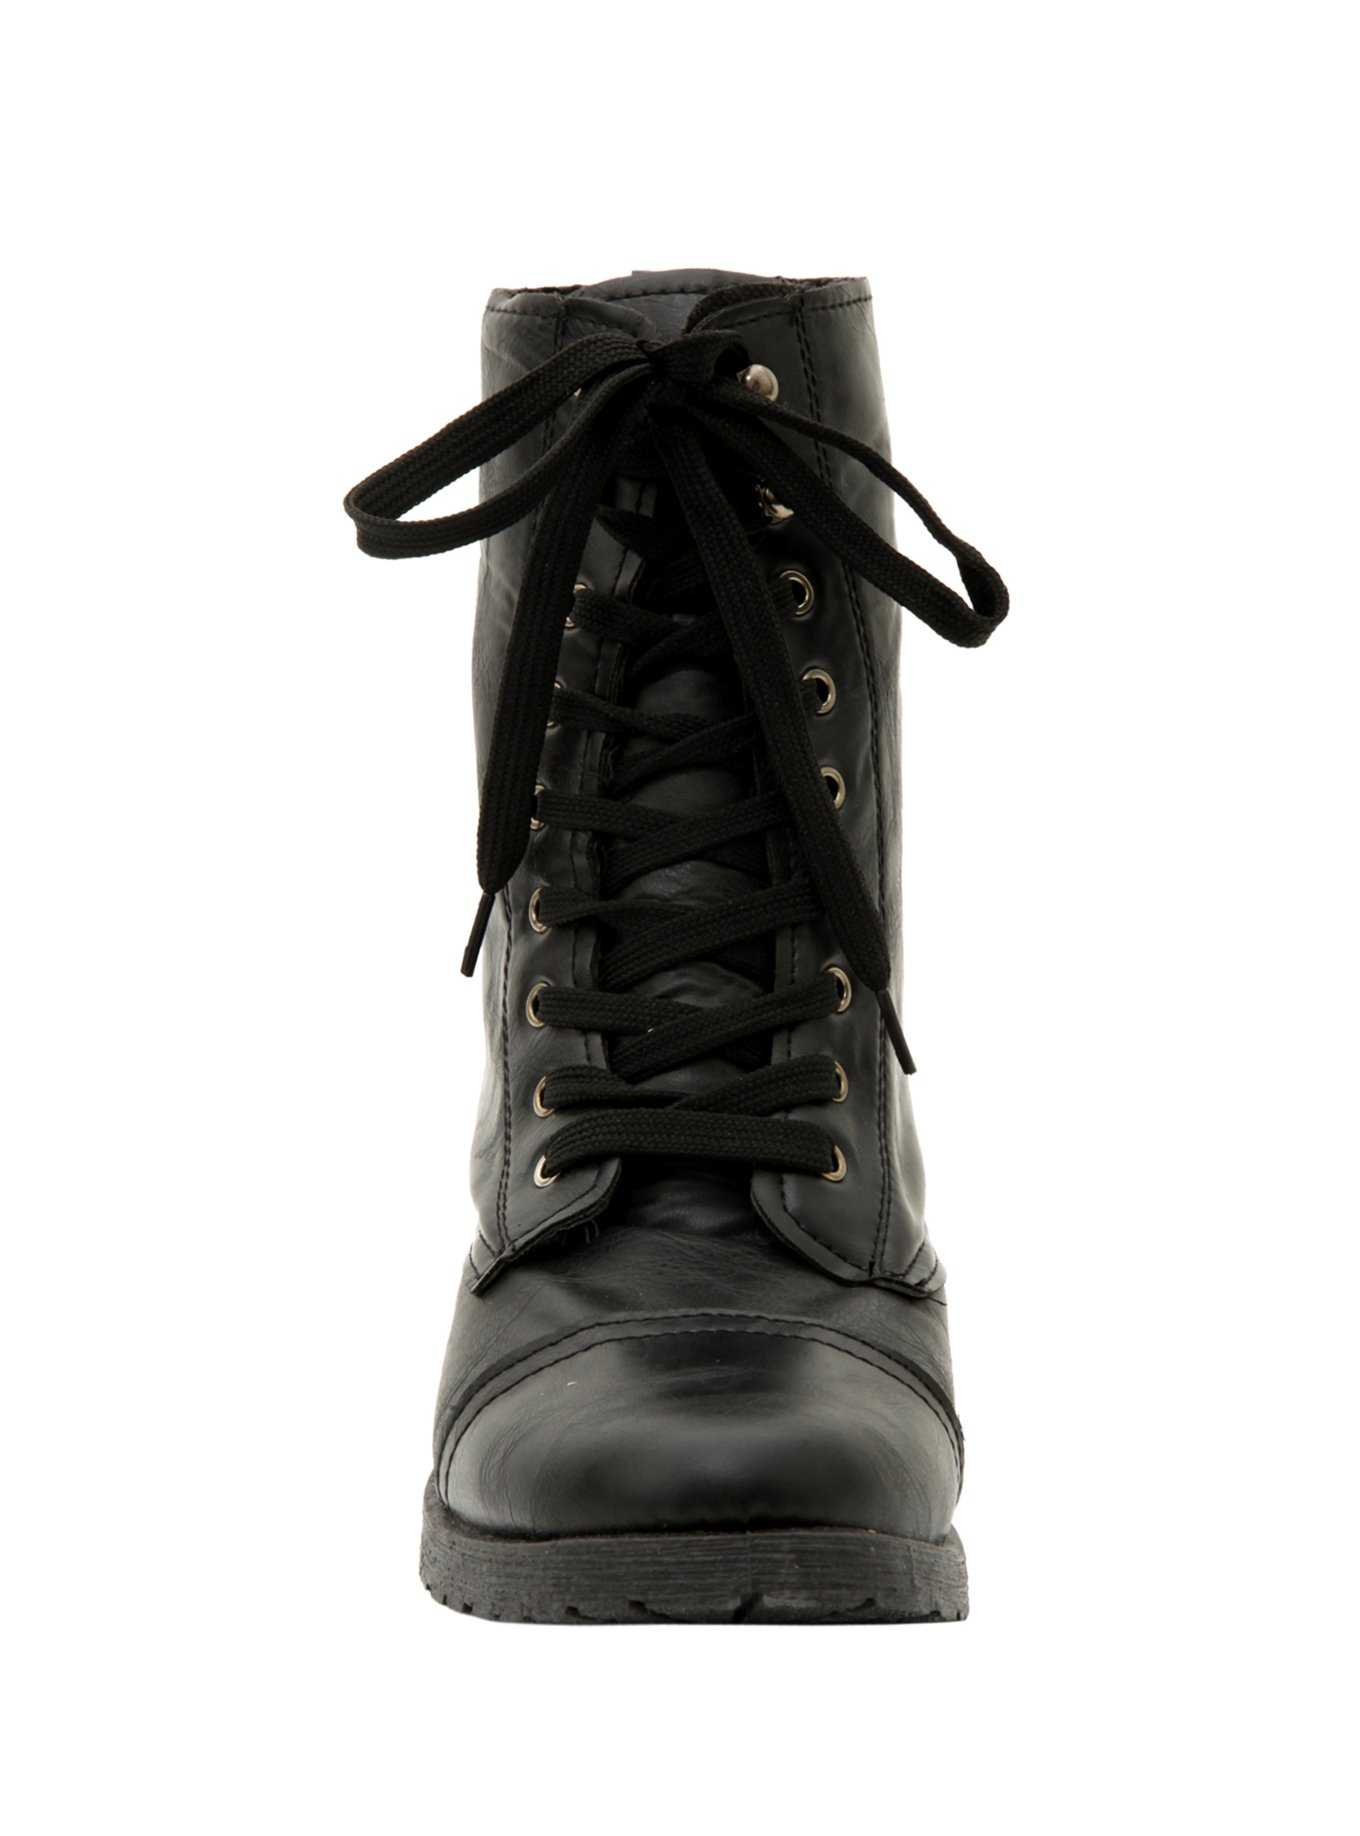 Black Floral Lined Combat Boots, , hi-res